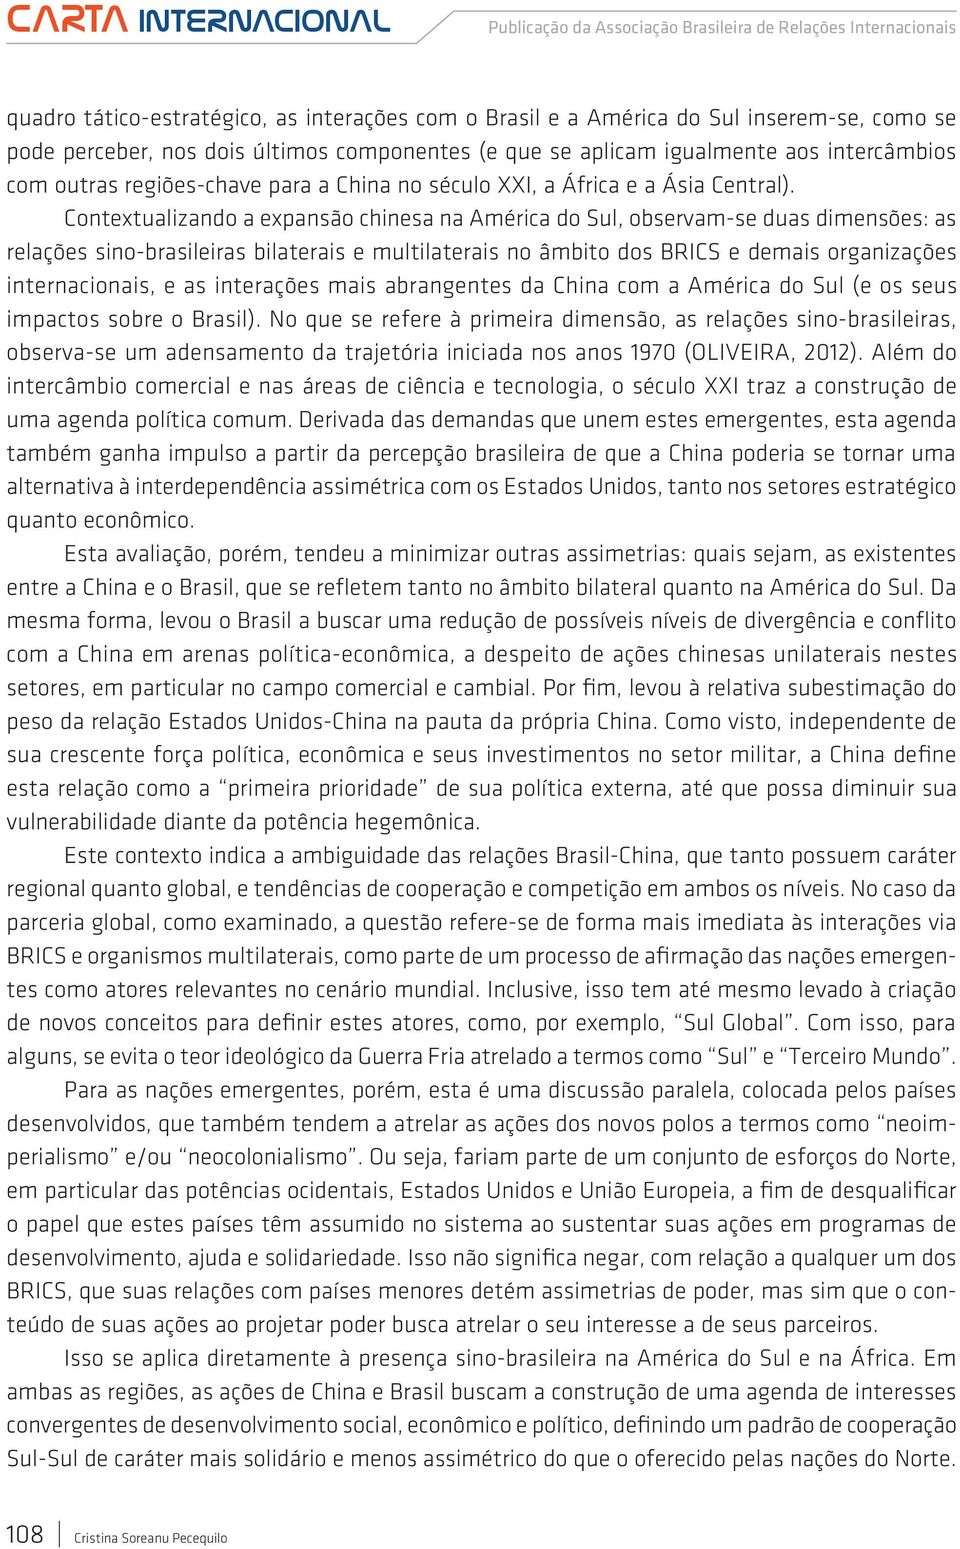 Contextualizando a expansão chinesa na América do Sul, observam-se duas dimensões: as relações sino-brasileiras bilaterais e multilaterais no âmbito dos BRICS e demais organizações internacionais, e